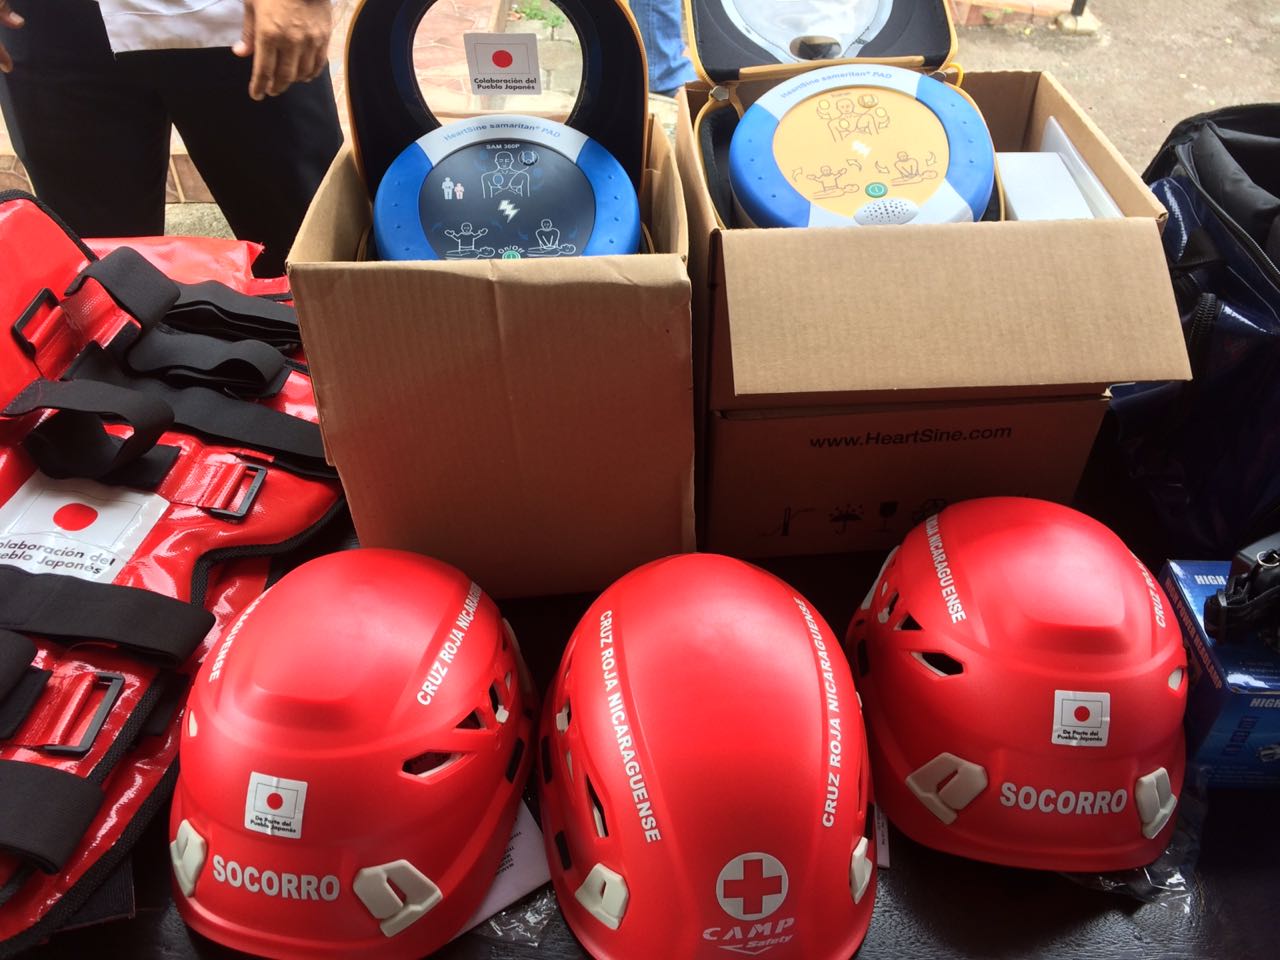 Parte de los equipos médicos donados a la Cruz Roja Nicaragüense por parte del Gobierno de Japón. Foto: Walkiria Chavarría